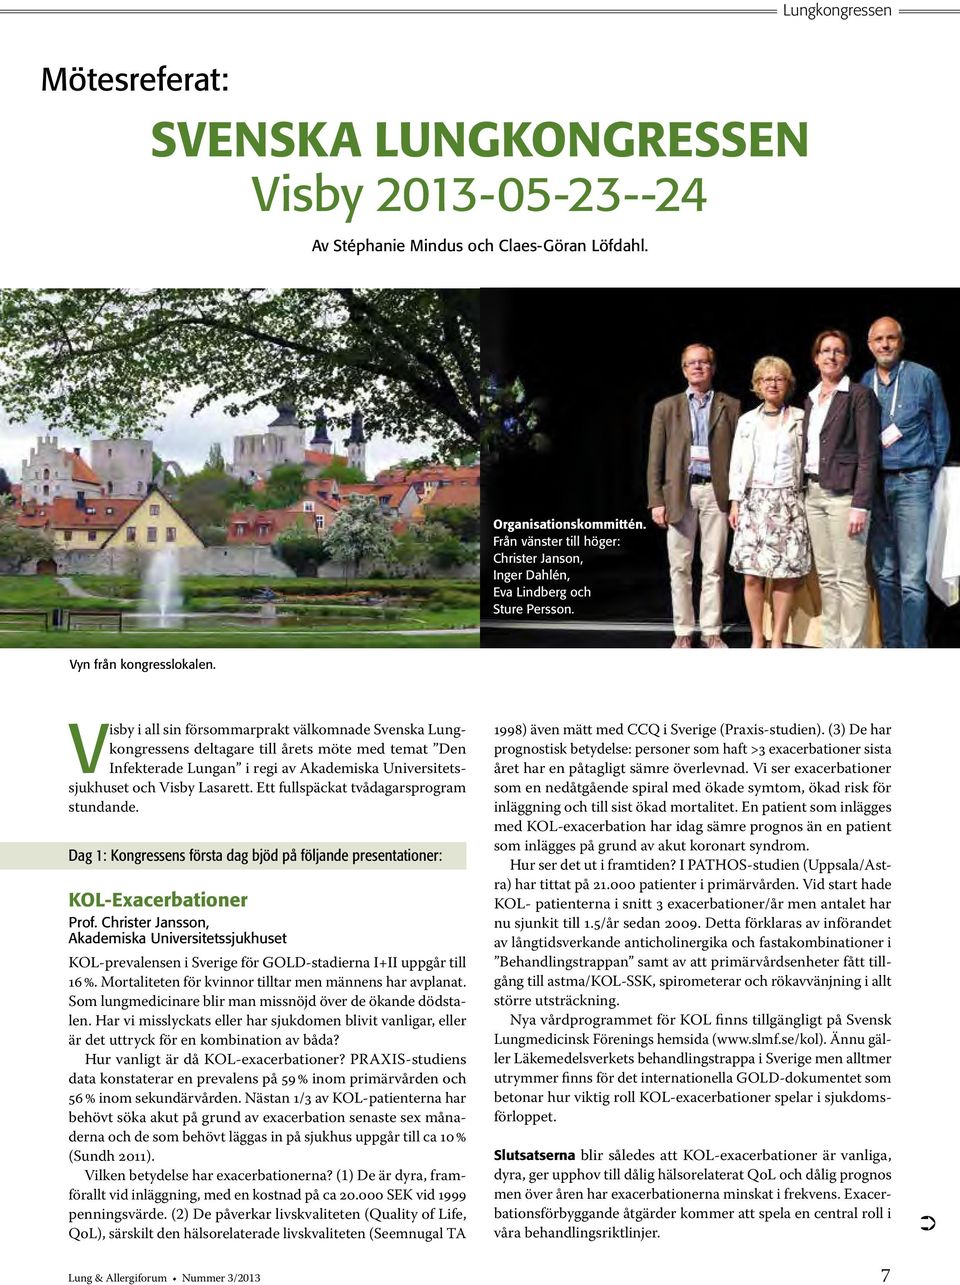 Visby i all sin försommarprakt välkomnade Svenska Lungkongressens deltagare till årets möte med temat Den Infekterade Lungan i regi av Akademiska Universitetssjukhuset och Visby Lasarett.